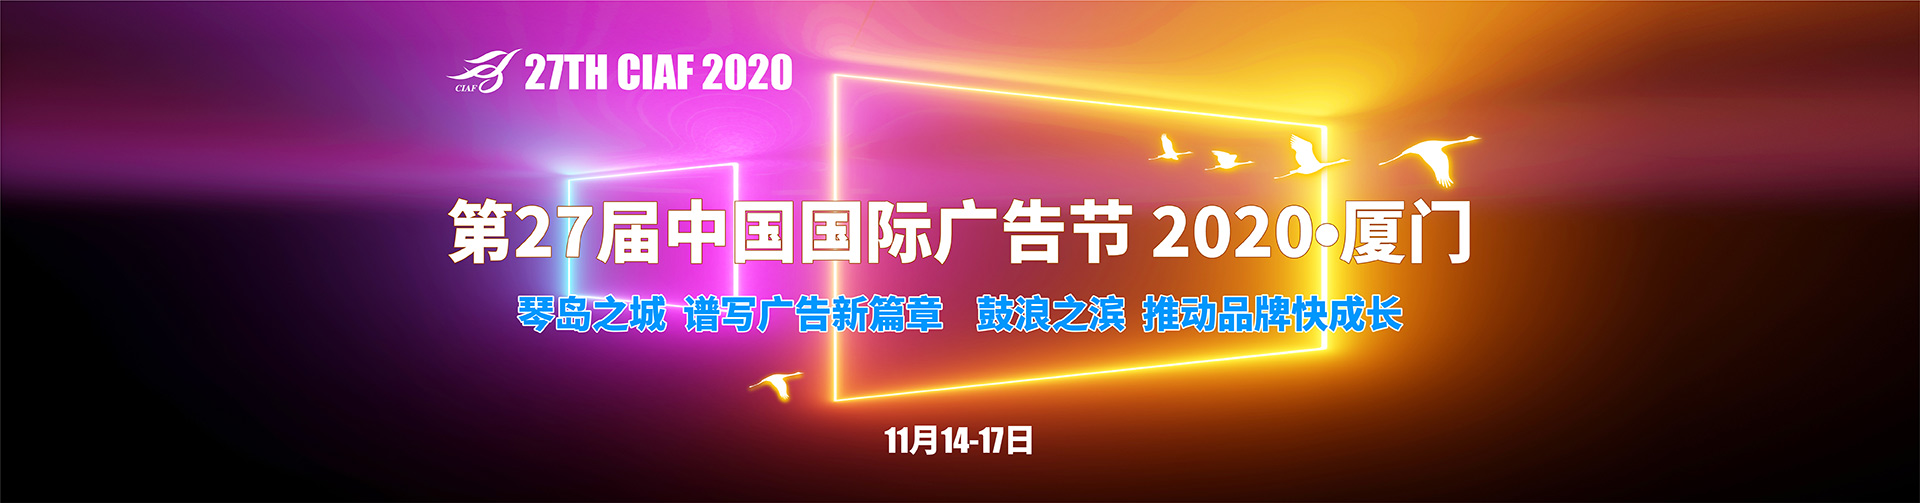 2020年国际广告节——CNAD中国广告网专题